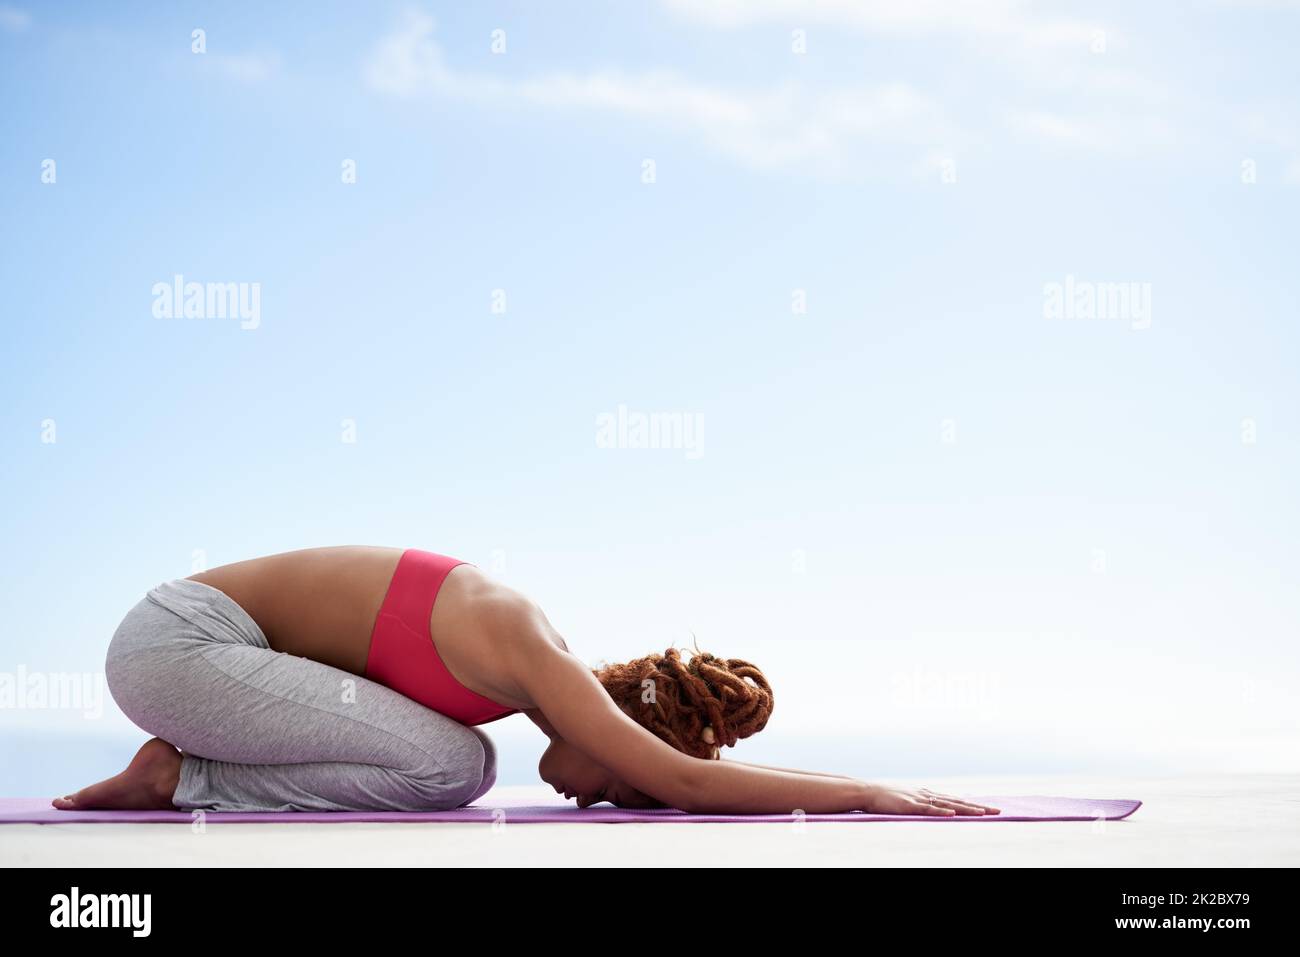 La pose parfaite pour une journée parfaite. Photo d'une jeune femme pratiquant le yoga à l'extérieur. Banque D'Images